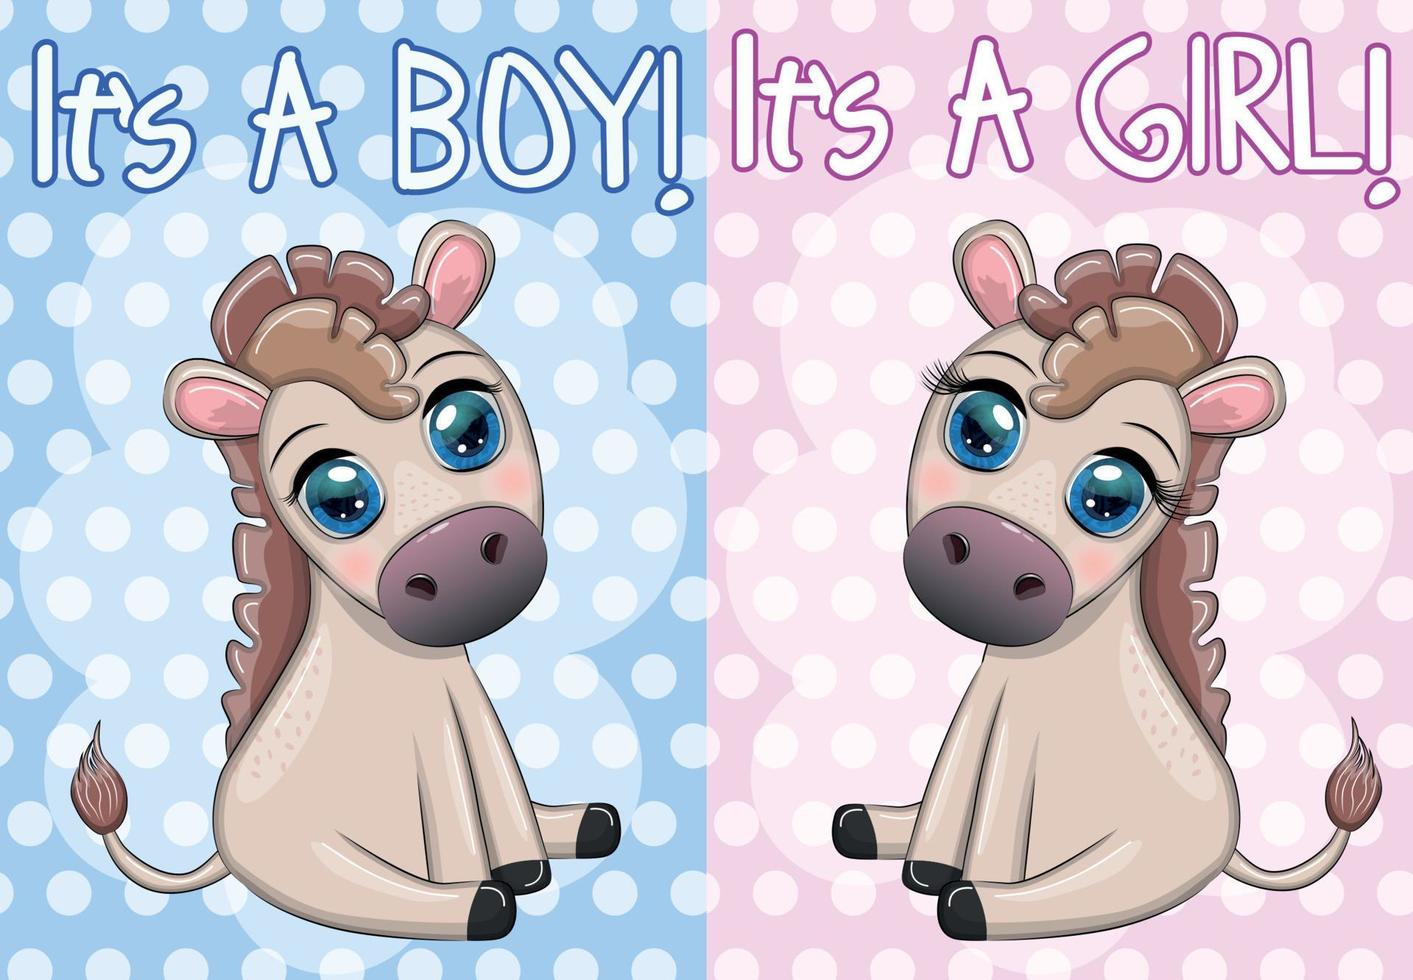 fiesta de baby shower con lindo burro de dibujos animados, pony boy y girl vector